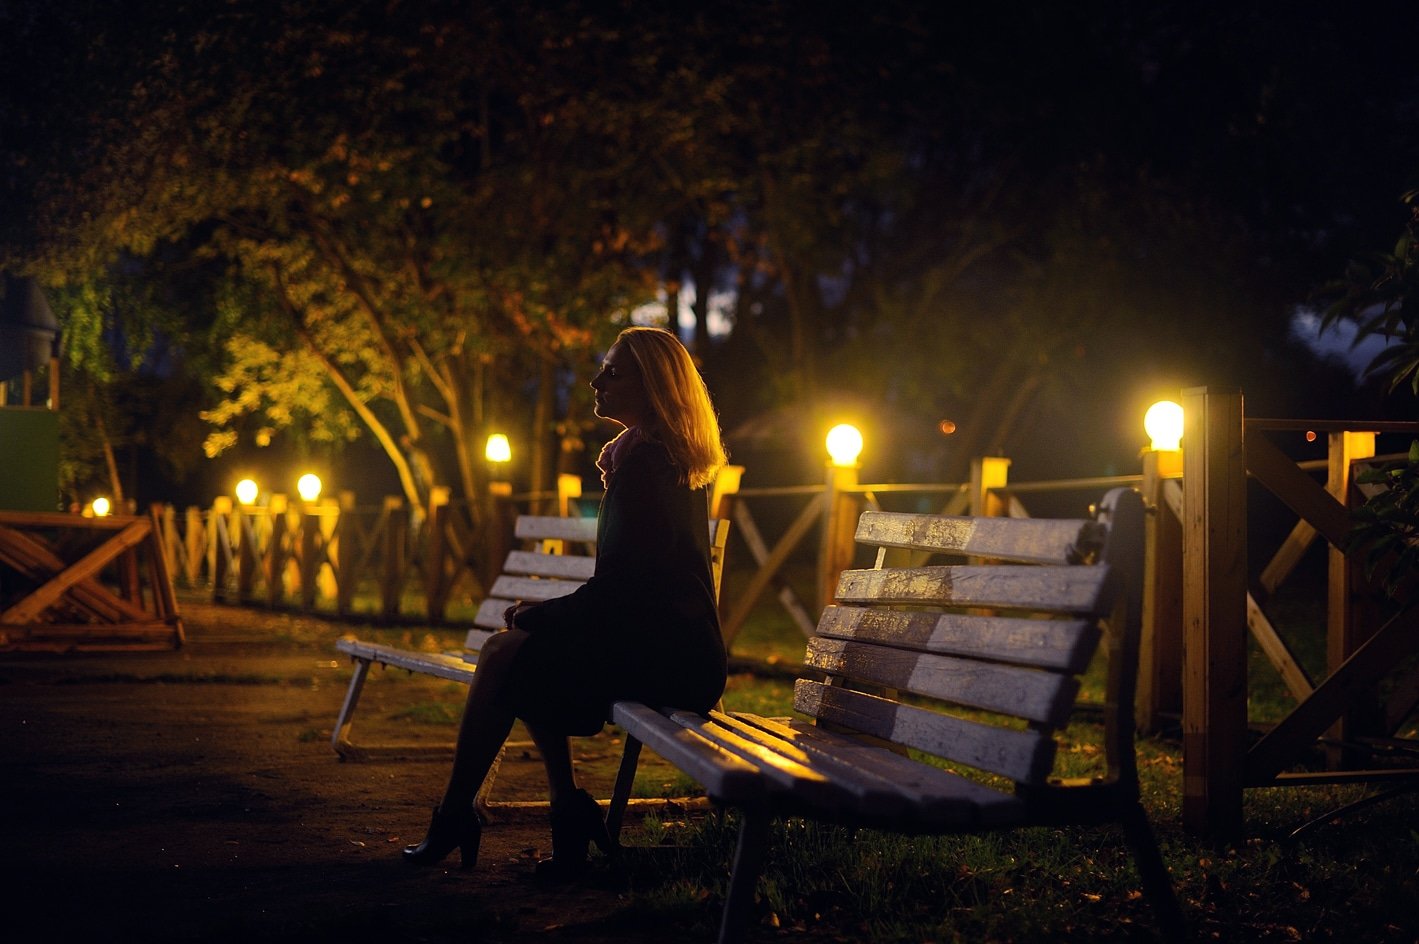 Девушка на 1 вечер. Девушка на скамейке в парке. Девушка в ночном городе. Прогулка вечером в парке. Девушка вечер город.